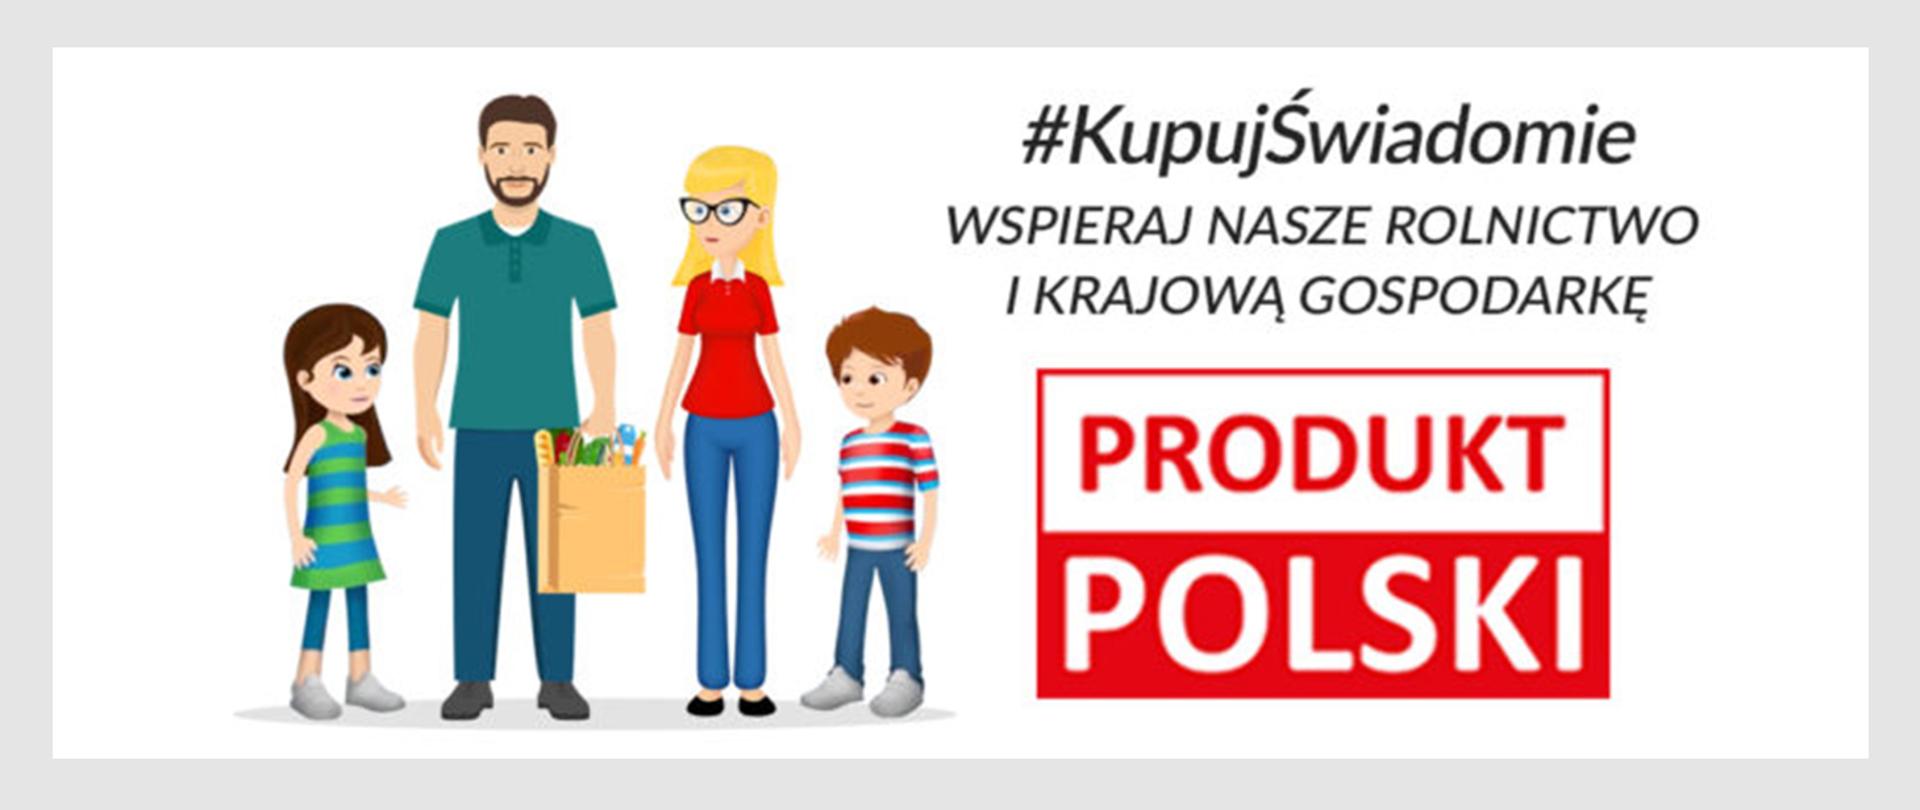 Po lewej stronie rysunek 4 osobowej rodziny:
Chłopiec, tata, mama i dziewczynka
Tata trzyma za rękę chłopca a mama dziewczynkę.
Tata trzyma w ręku torbę z zakupami. Po prawej stronie napis:
#kupujświadomie
Wspieraj nasze rolnictwo i krajową gospodarkę.
Produkt polski. 